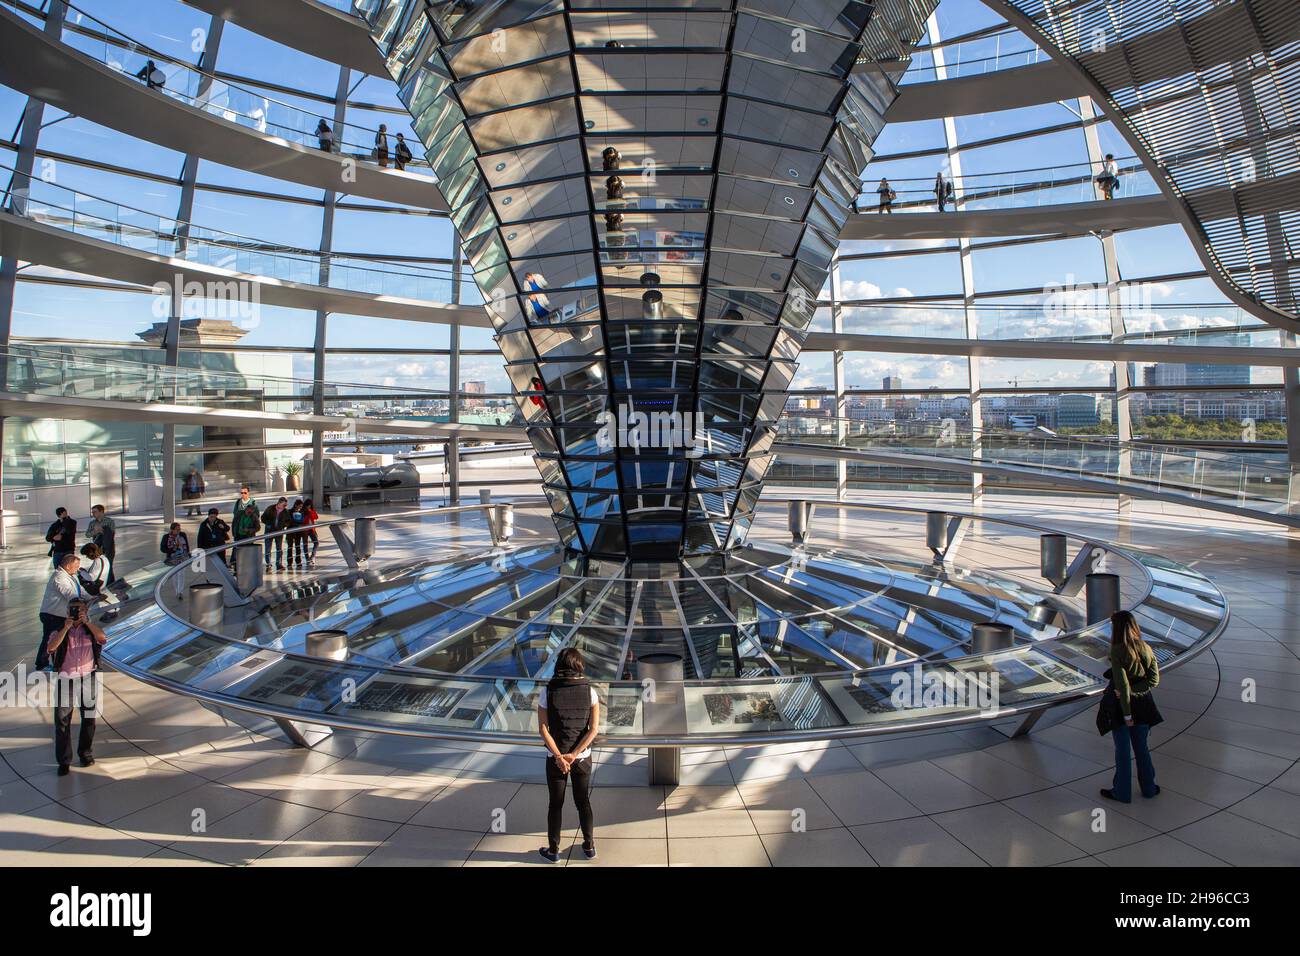 Le dôme du Reichstag sur le toit du Bundestag allemand à Berlin Mitte de l'intérieur.Architecture moderne en aluminium, verre et miroirs. Banque D'Images